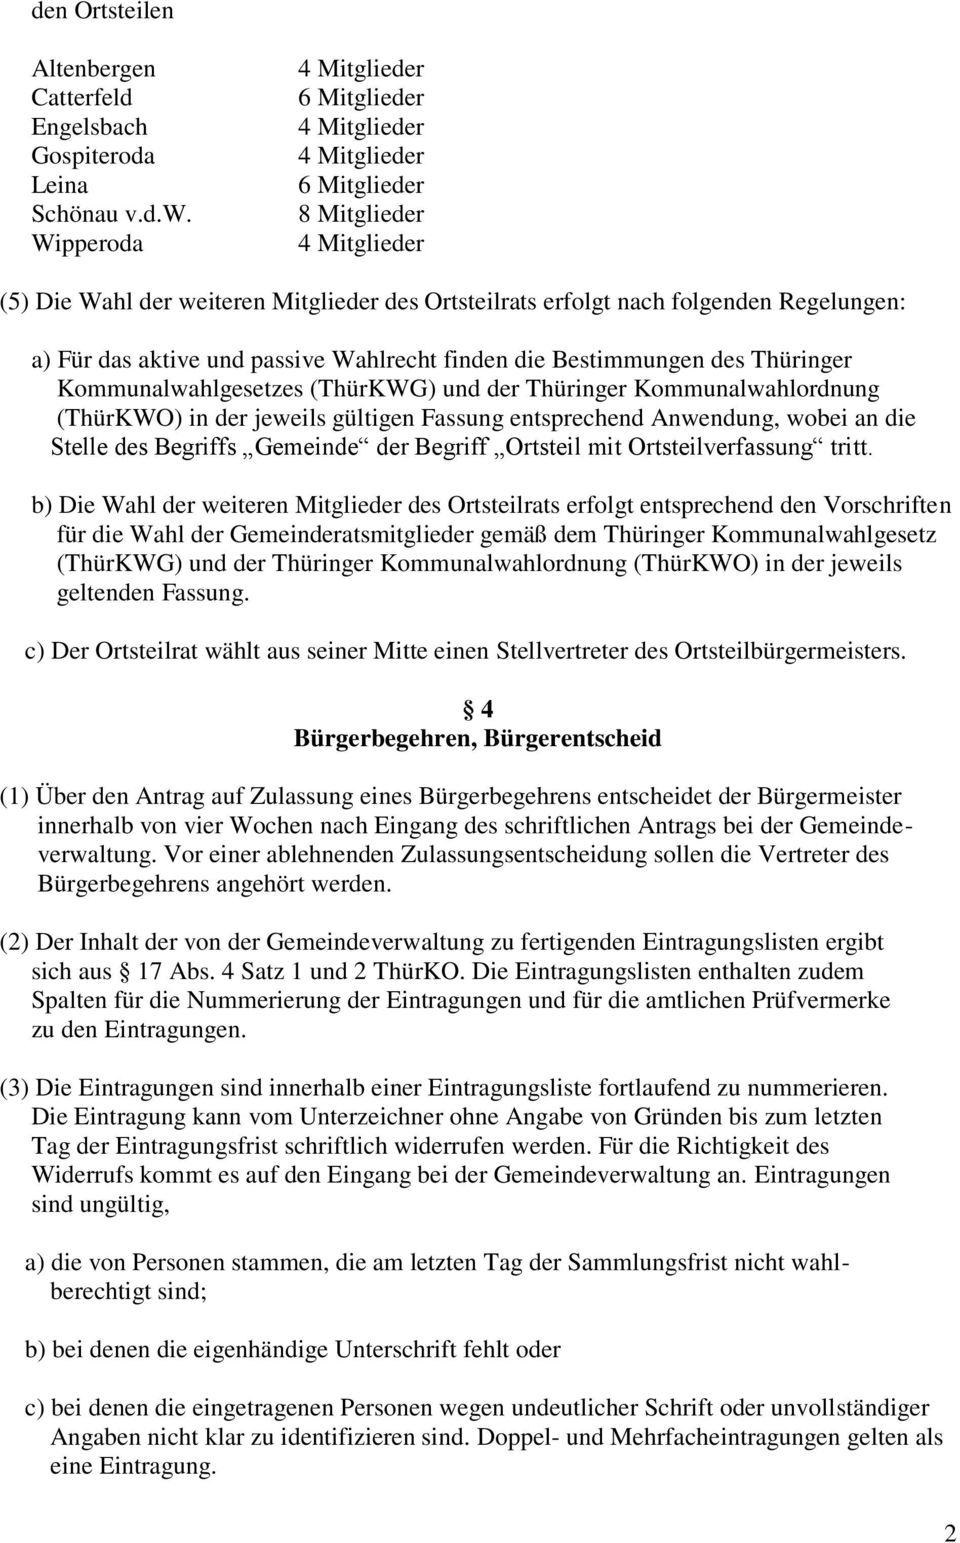 das aktive und passive Wahlrecht finden die Bestimmungen des Thüringer Kommunalwahlgesetzes (ThürKWG) und der Thüringer Kommunalwahlordnung (ThürKWO) in der jeweils gültigen Fassung entsprechend